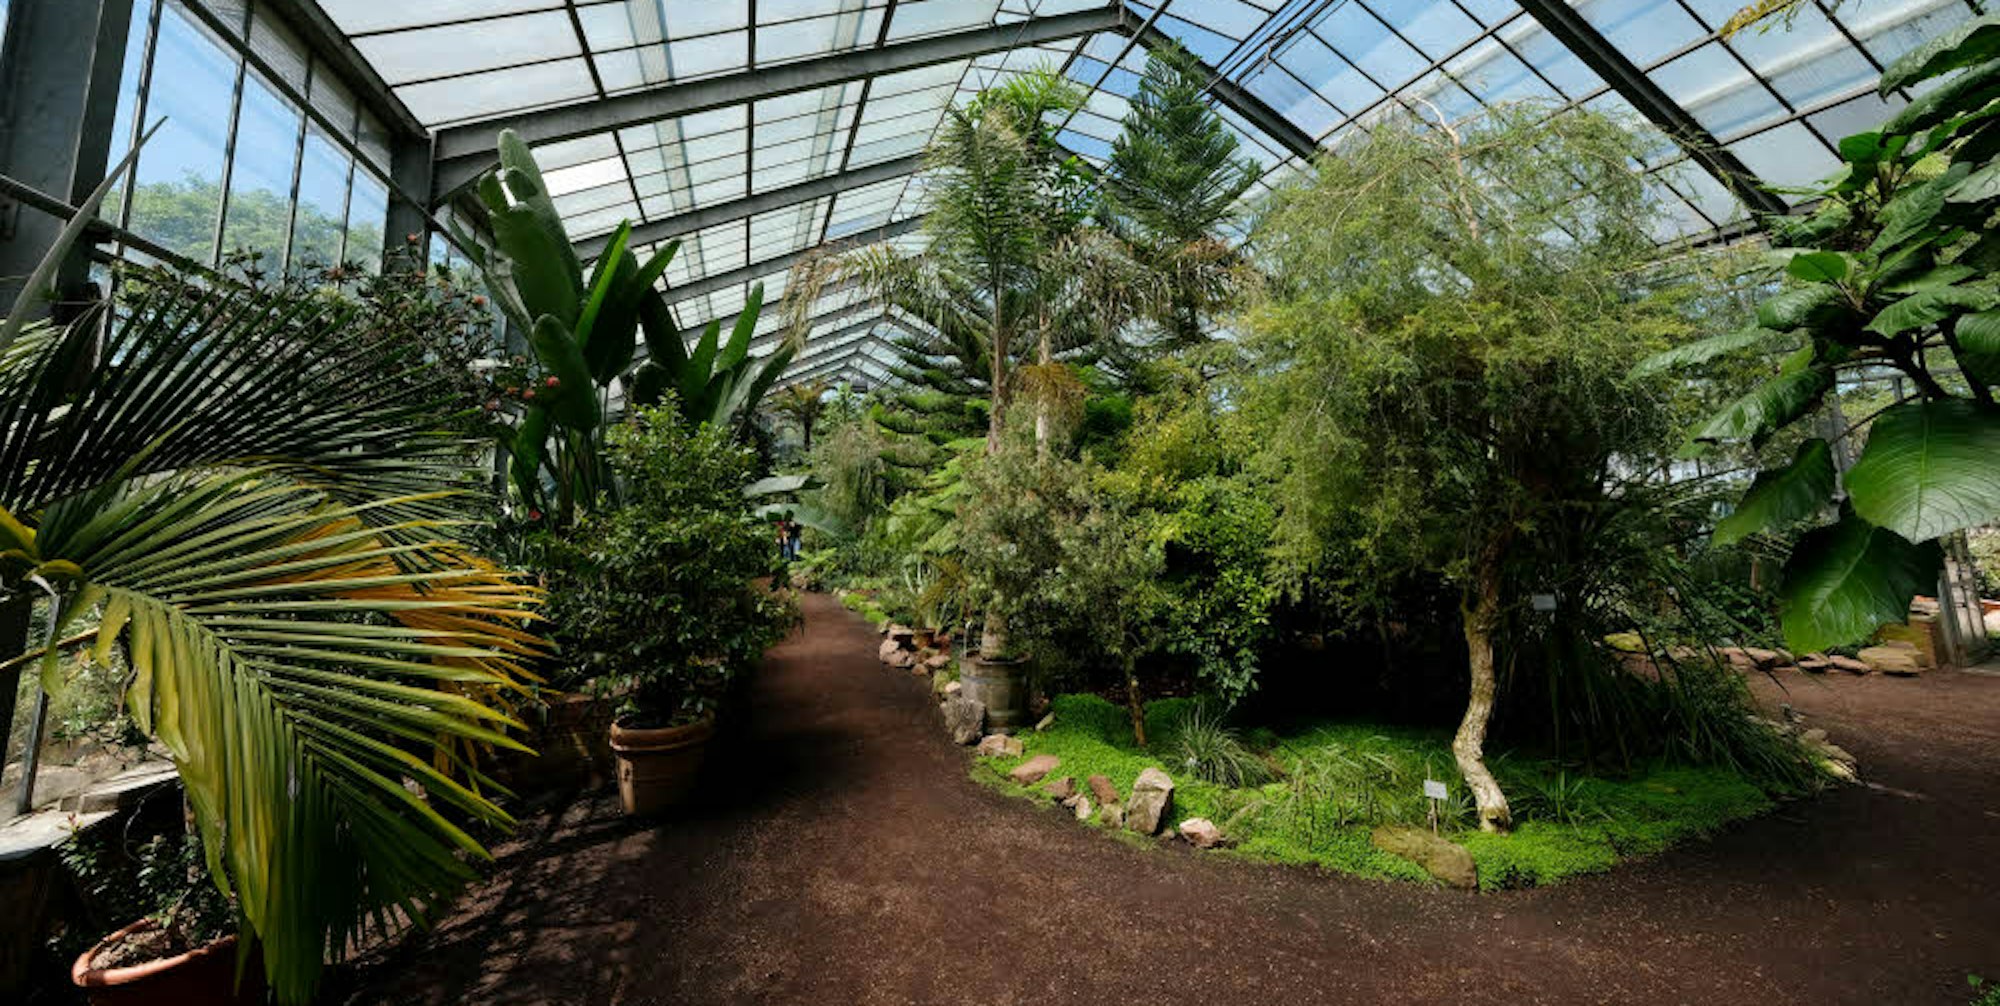 Tausende Besucher sehen sich die suptropischen Pflanzen im Botanischen Garten an.